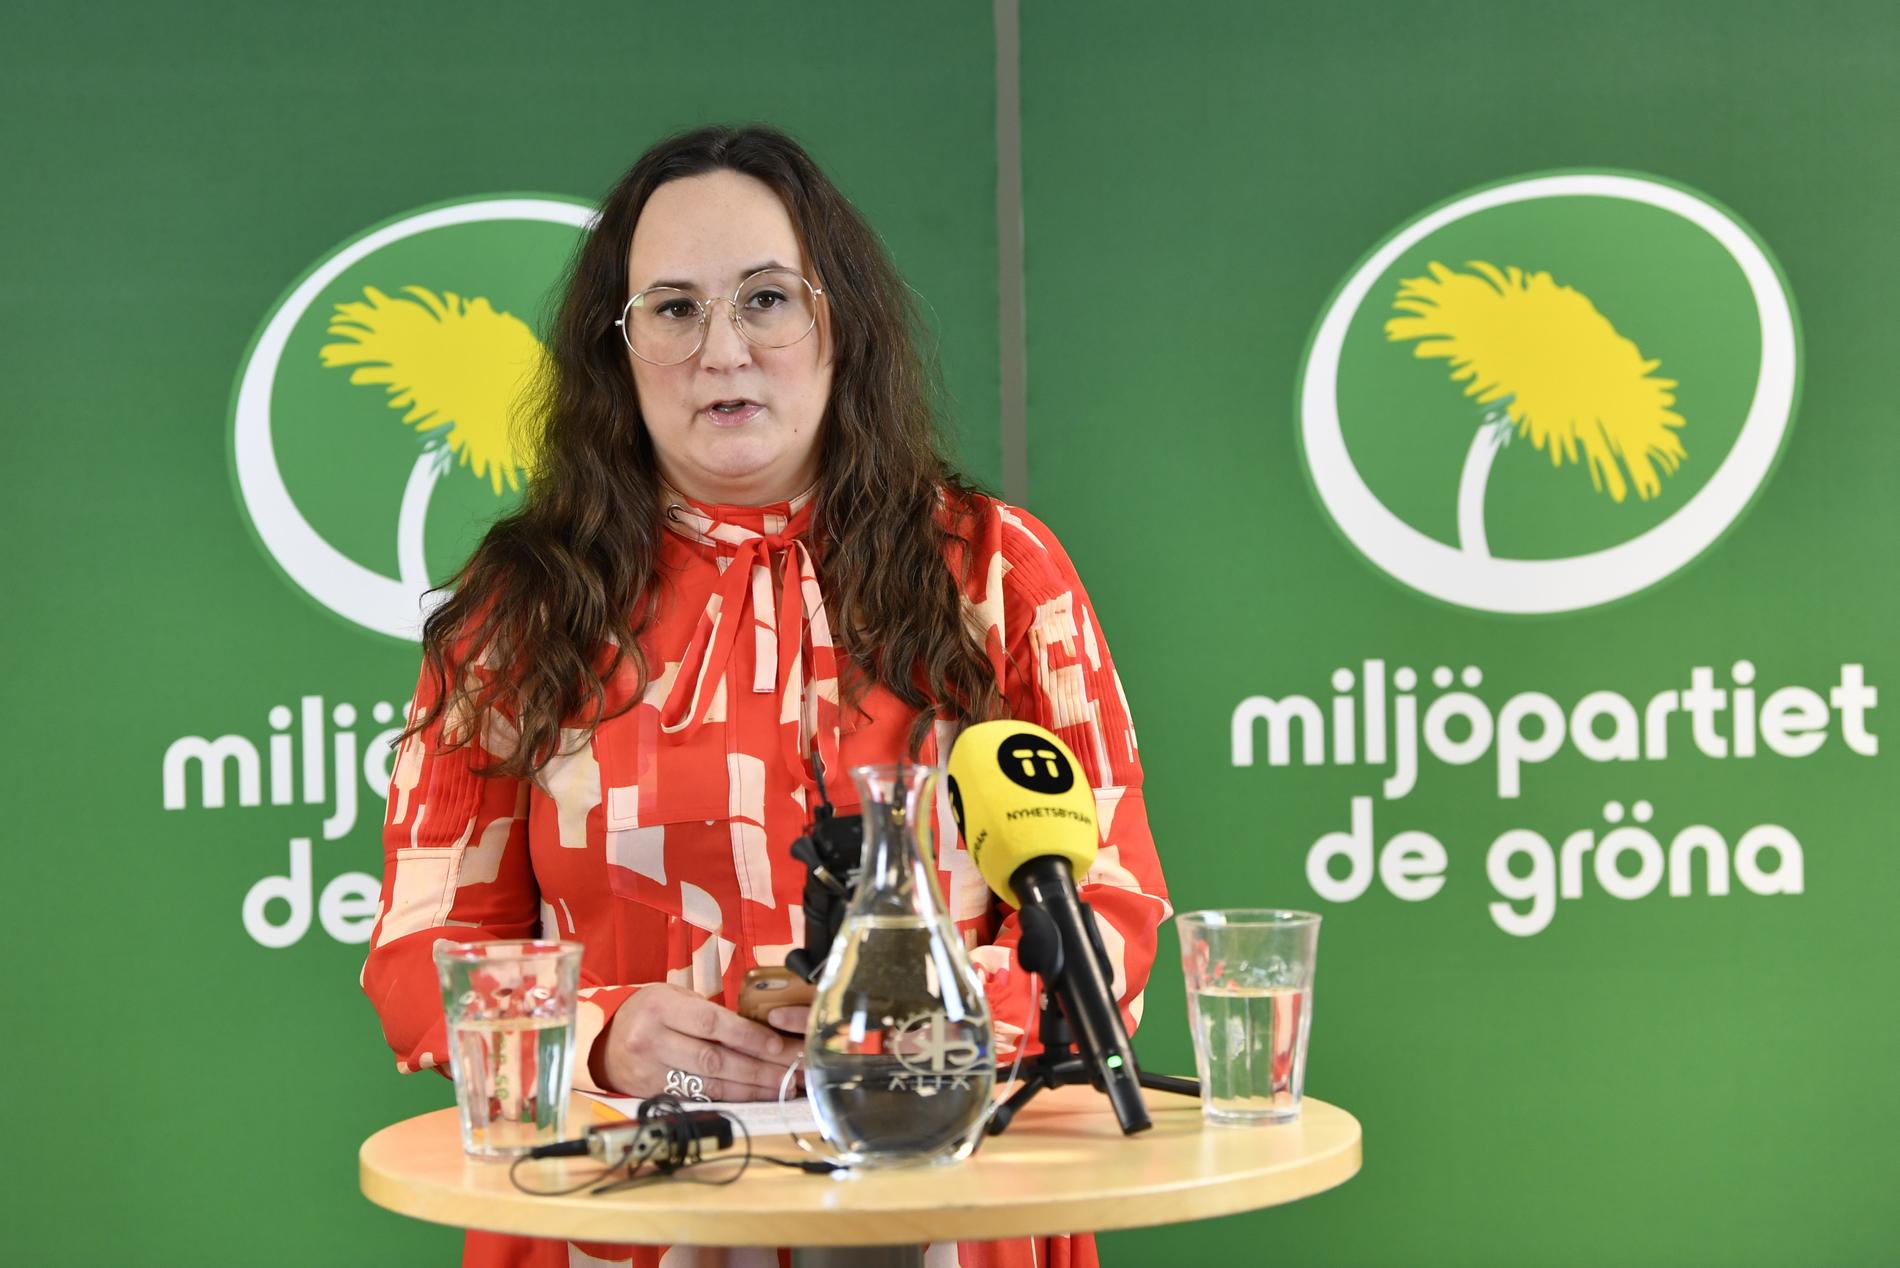 Miljöpartiets partisekreterare Katrin Wissing. Arkivbild.